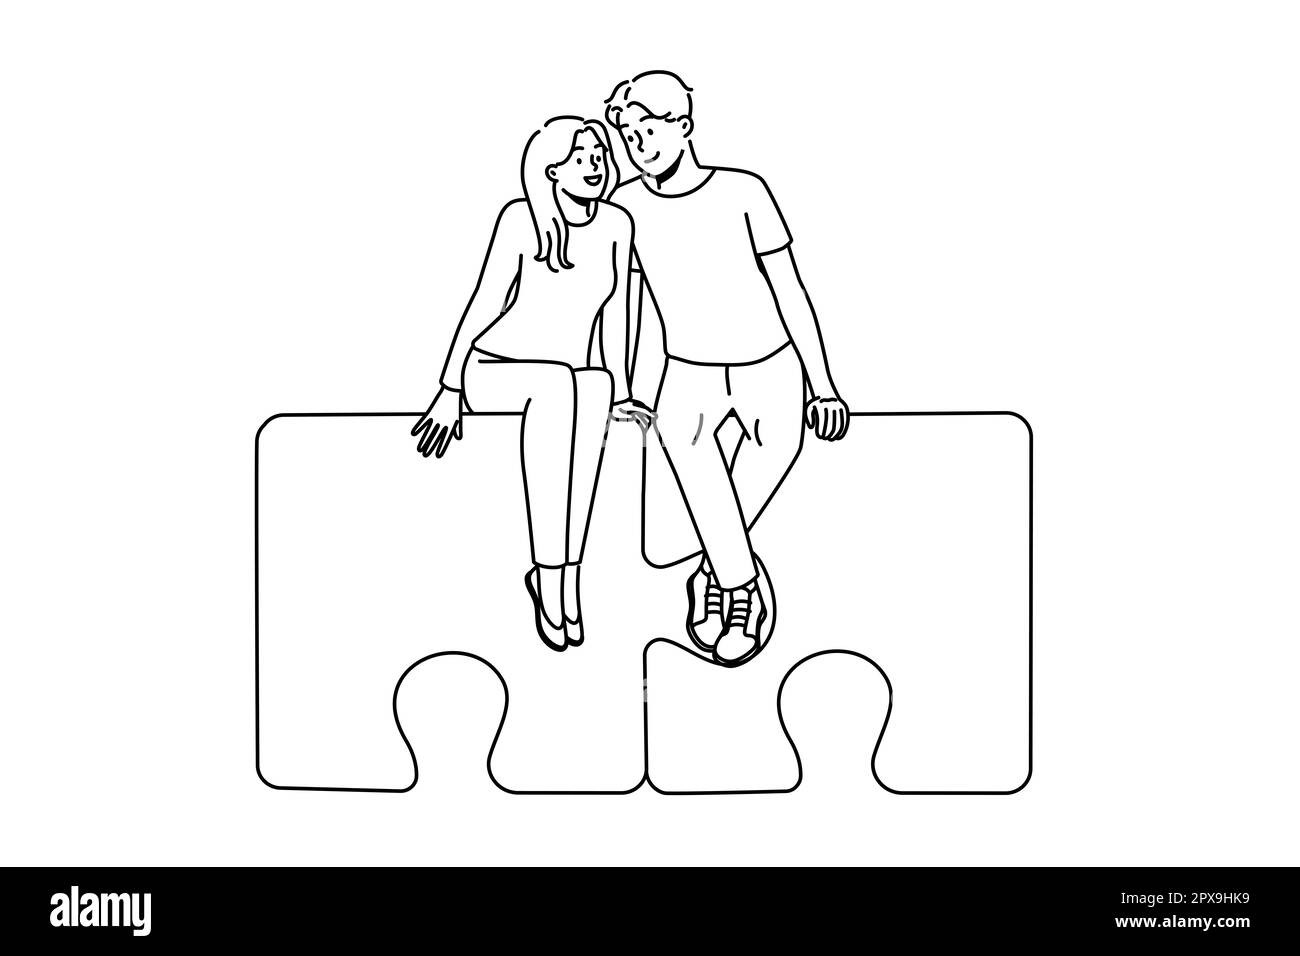 Glückliches Paar sitzt auf Puzzles umarmt. Lächelnder Mann und Frau umarmen sich und finden zusammen Liebe. Beziehung und Zuneigung. Vektorgrafik. Stockfoto